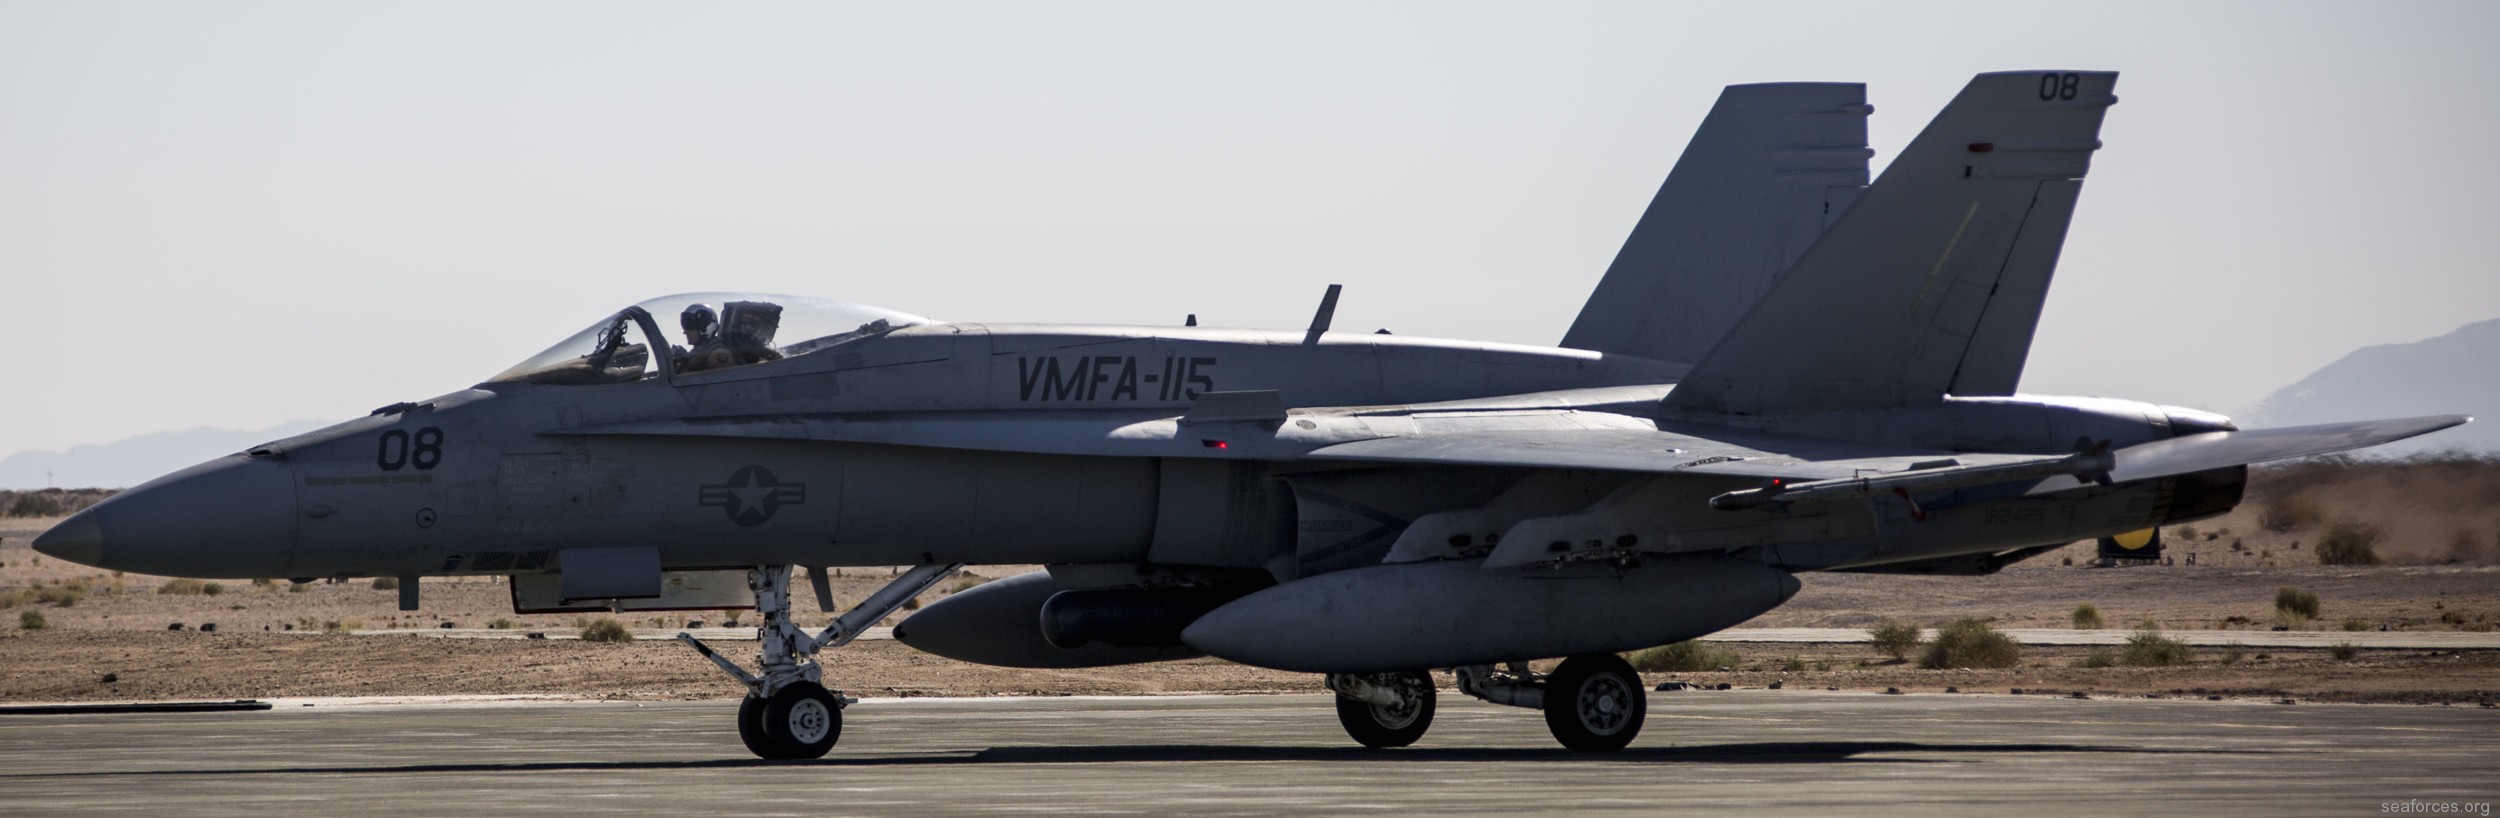 vmfa-115 silver eagles marine fighter attack squadron f/a-18a+ hornet 112